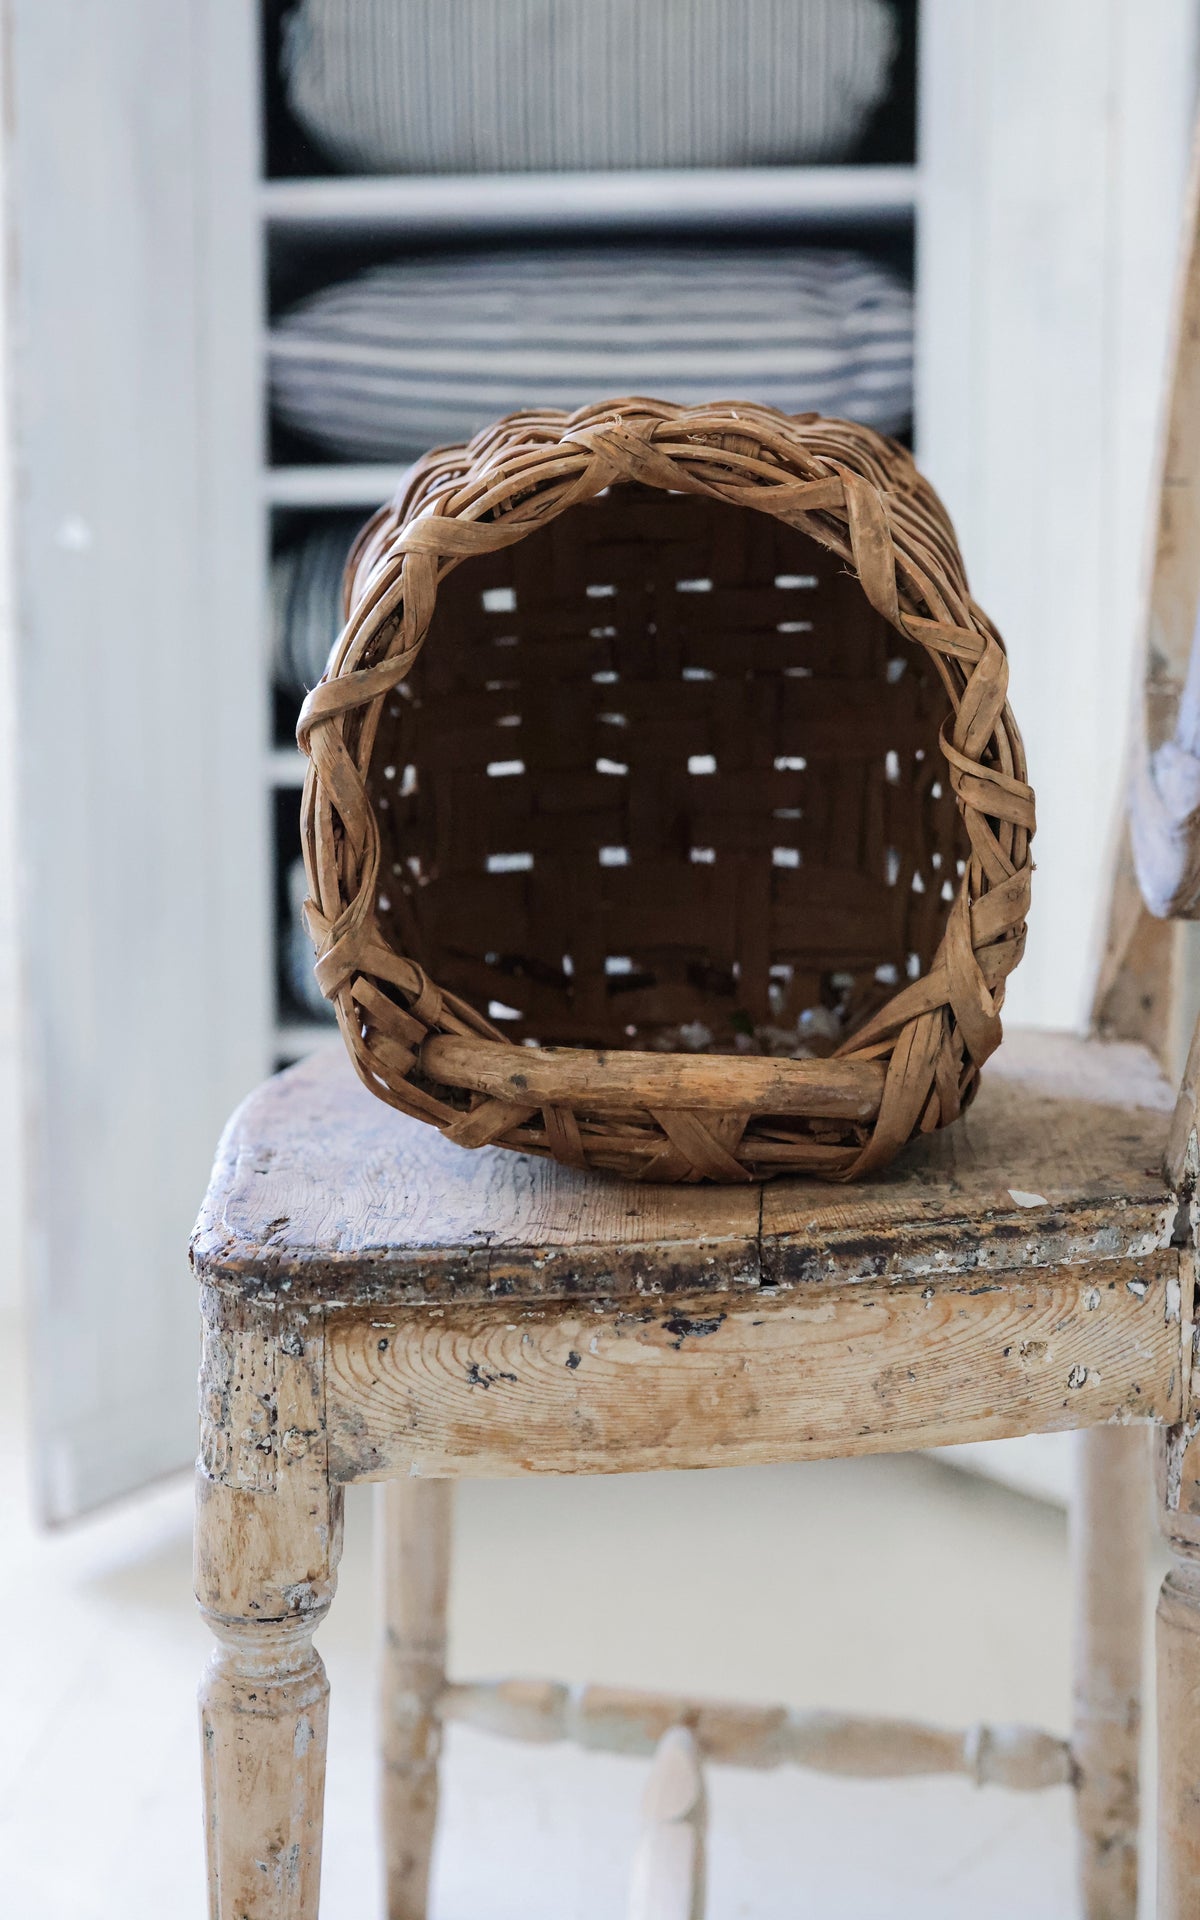 Vintage Swedish Harvesting Basket